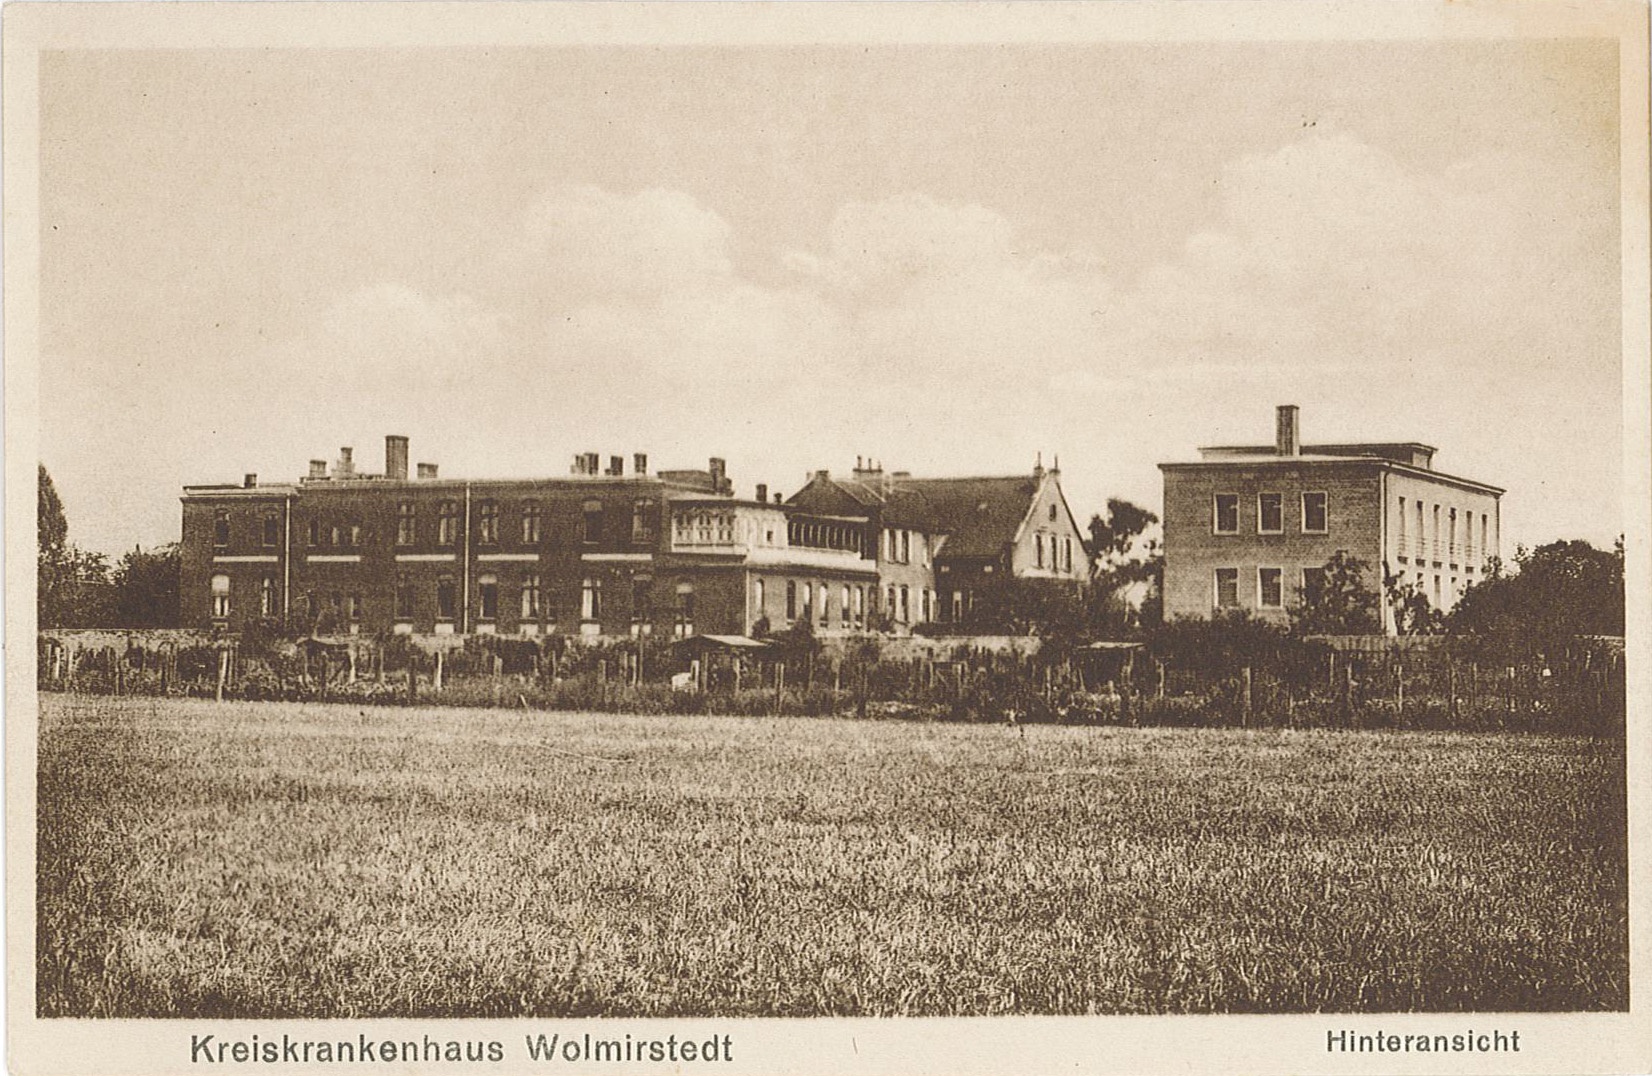 Postkarte mit Ansicht des Kreiskrankenhauses Wolmirstedt, 1928? (Museum Wolmirstedt RR-F)